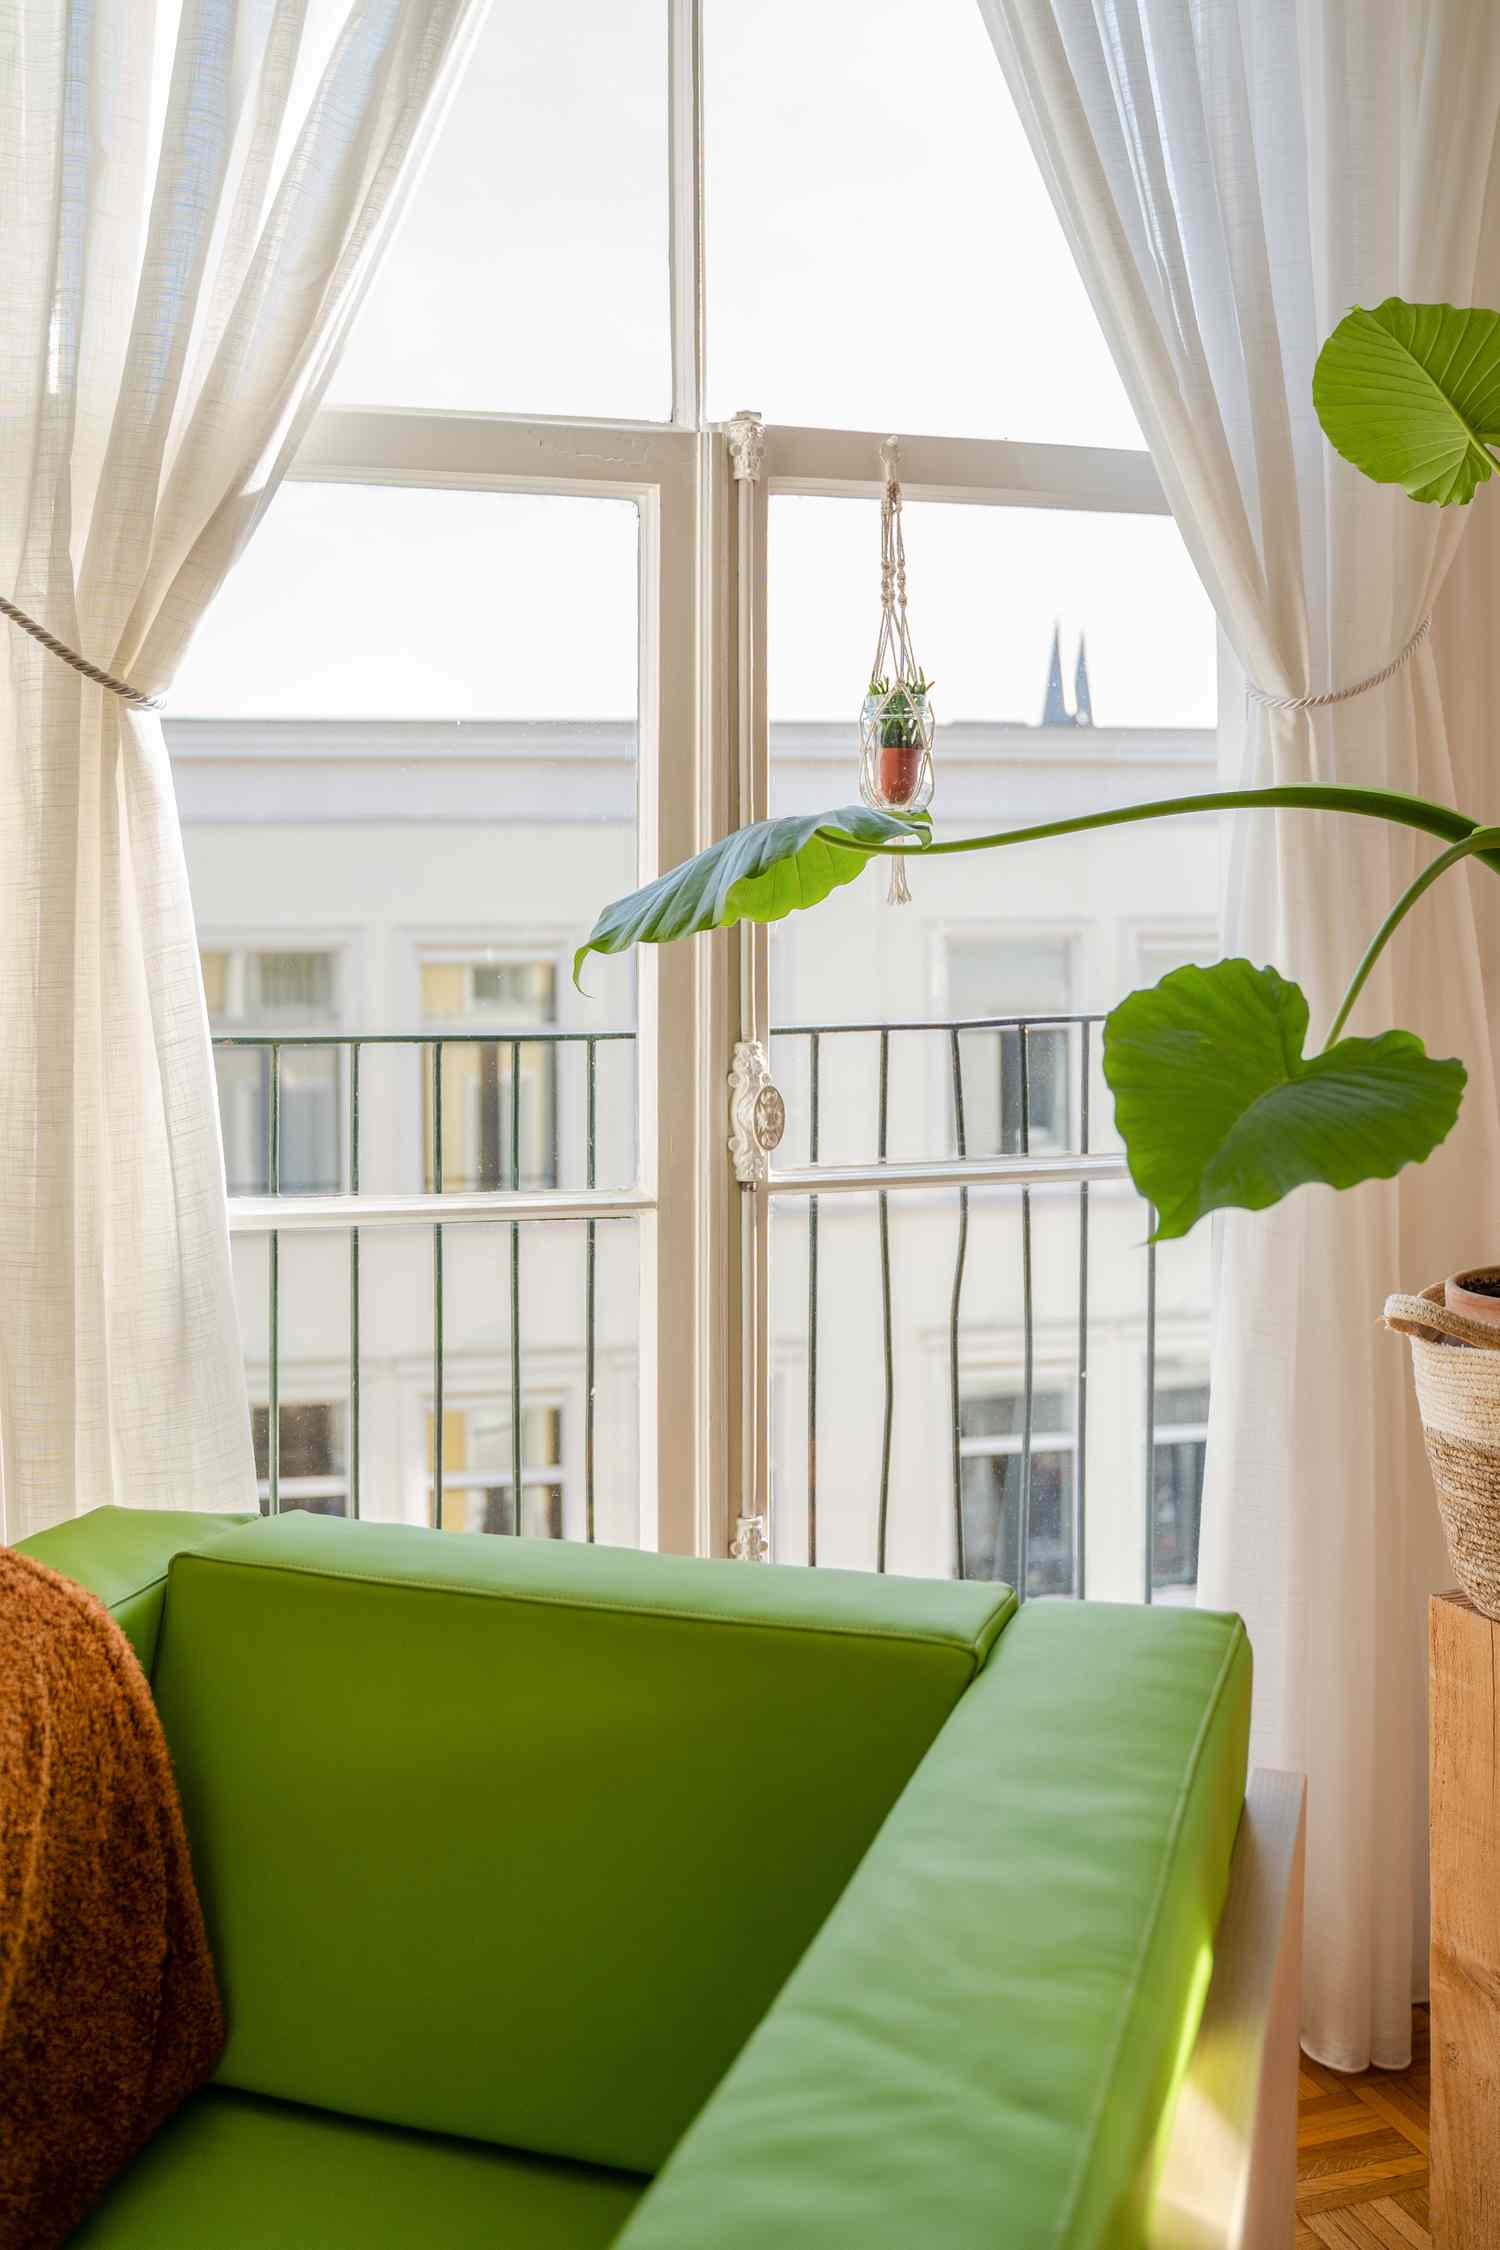 Fenster mit grünem Stuhl und grüner Pflanze